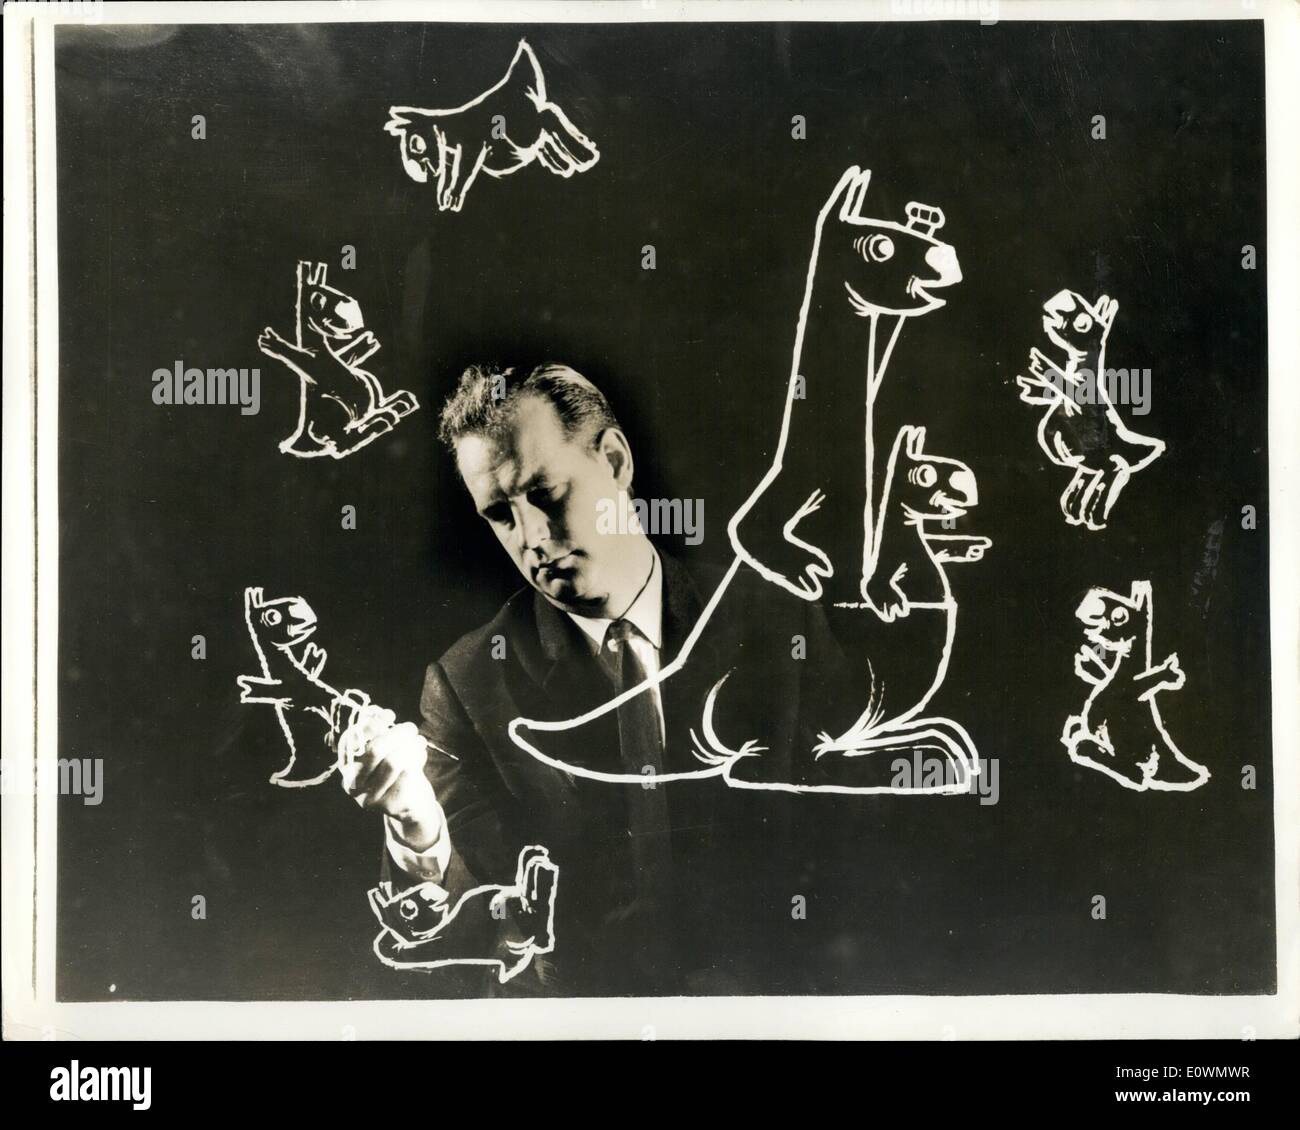 Sept. 09, 1963 - Symbol für neue TV-Kanal. : Die neue BBC-TV-Sender wegen Anfang April 1964 ist bekannt als BBC 2. und es wird ein Känguru als Symbol. das Foto zeigt Künstler Desmond Mr Wood, Br, die im Auftrag der BBC 2 Kängurus zu zeichnen hat. Stockfoto